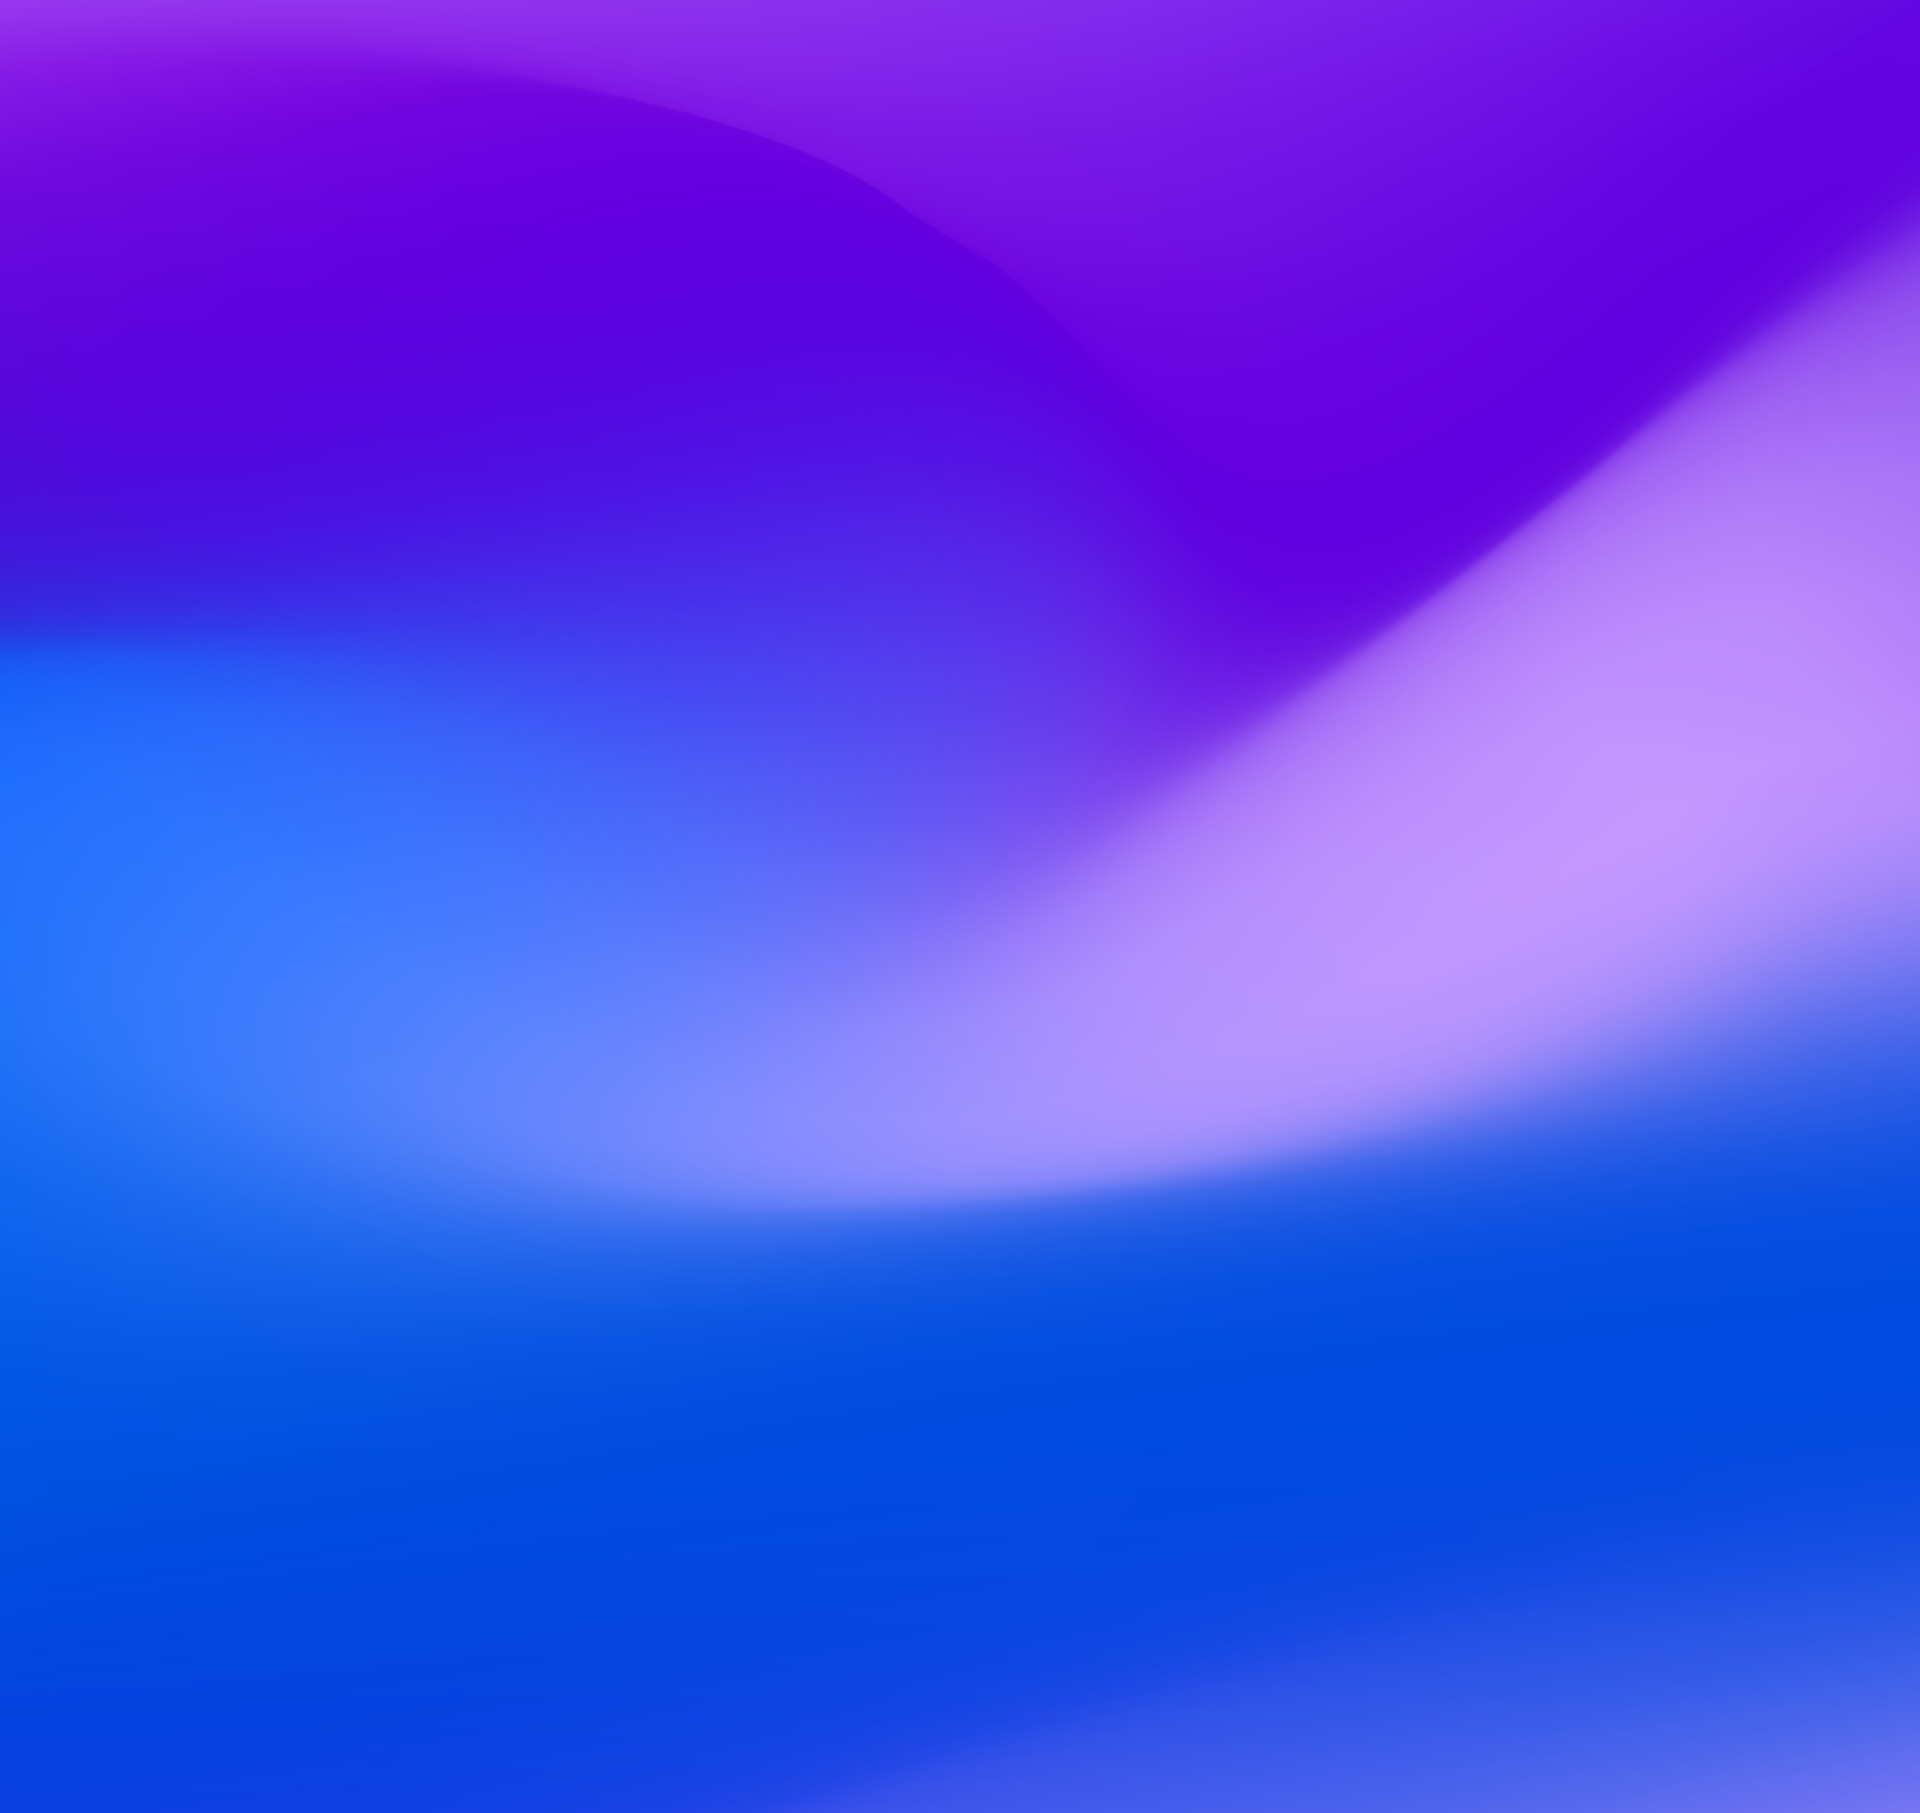 Fullwave purple opt1 3x